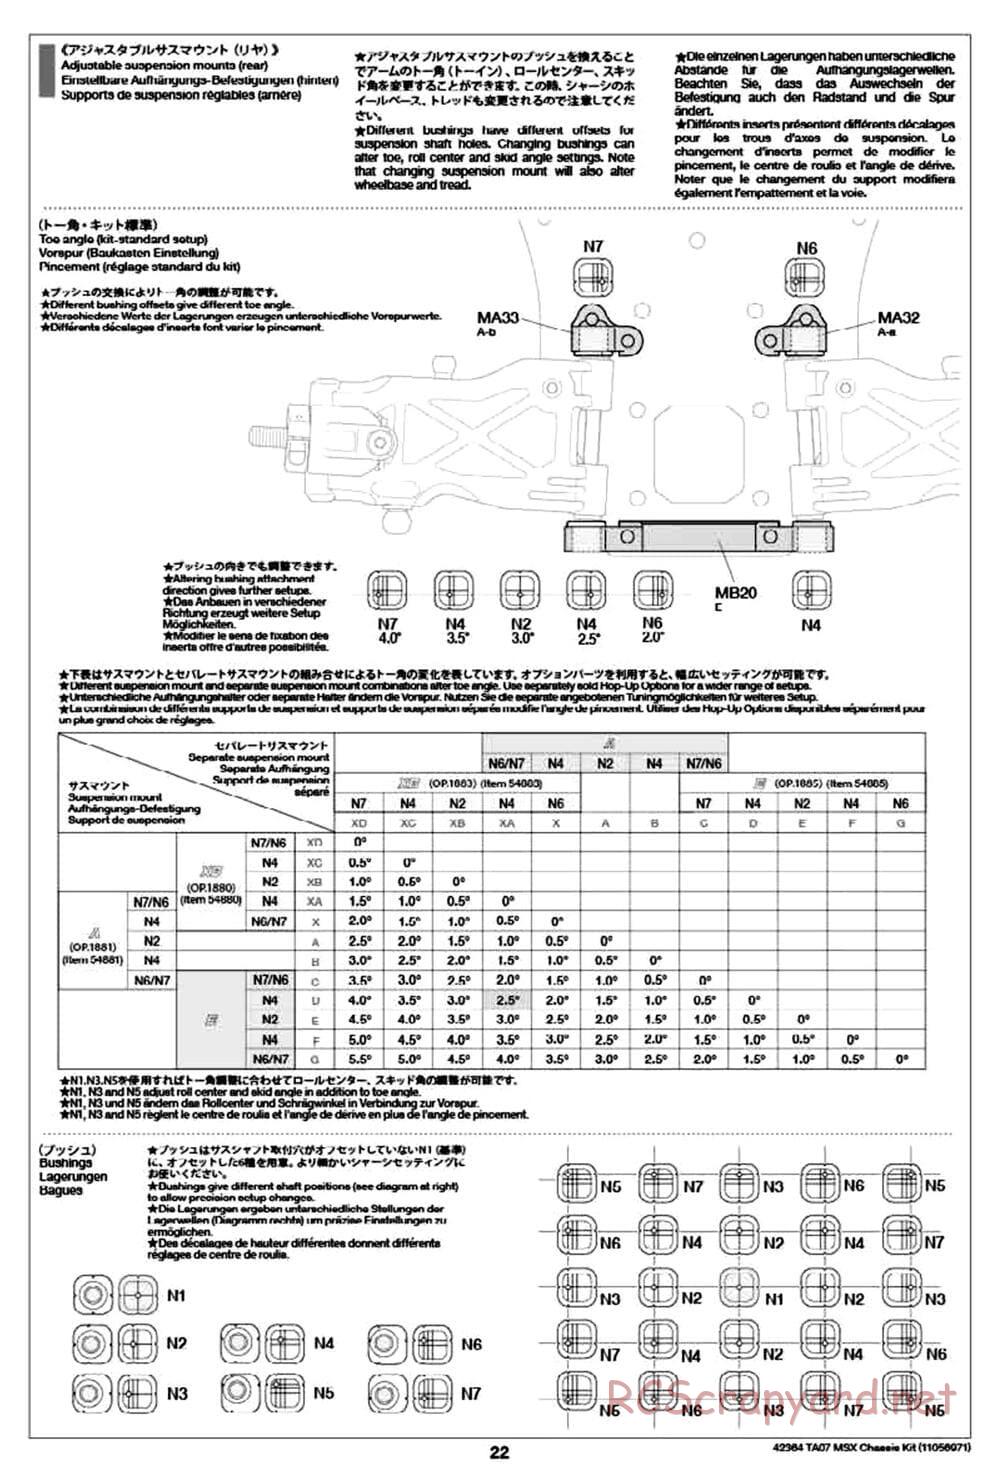 Tamiya - TA07 MSX Chassis - Manual - Page 22